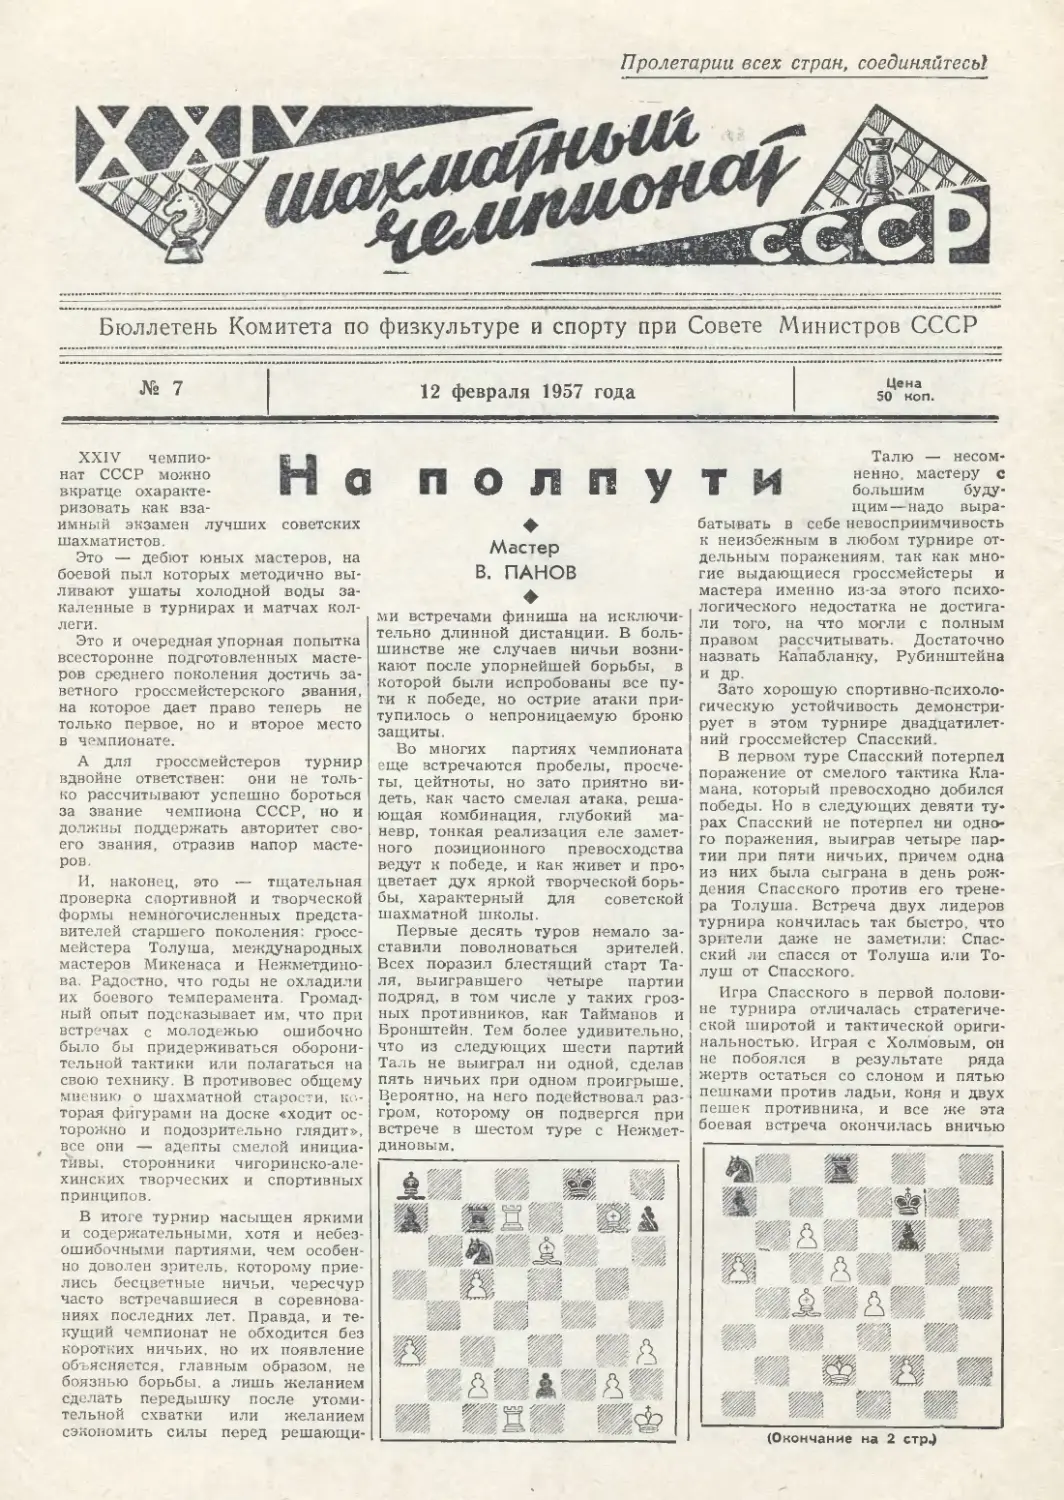 № 7 - 12 февраля 1957 г.
В.Панов - На полпути